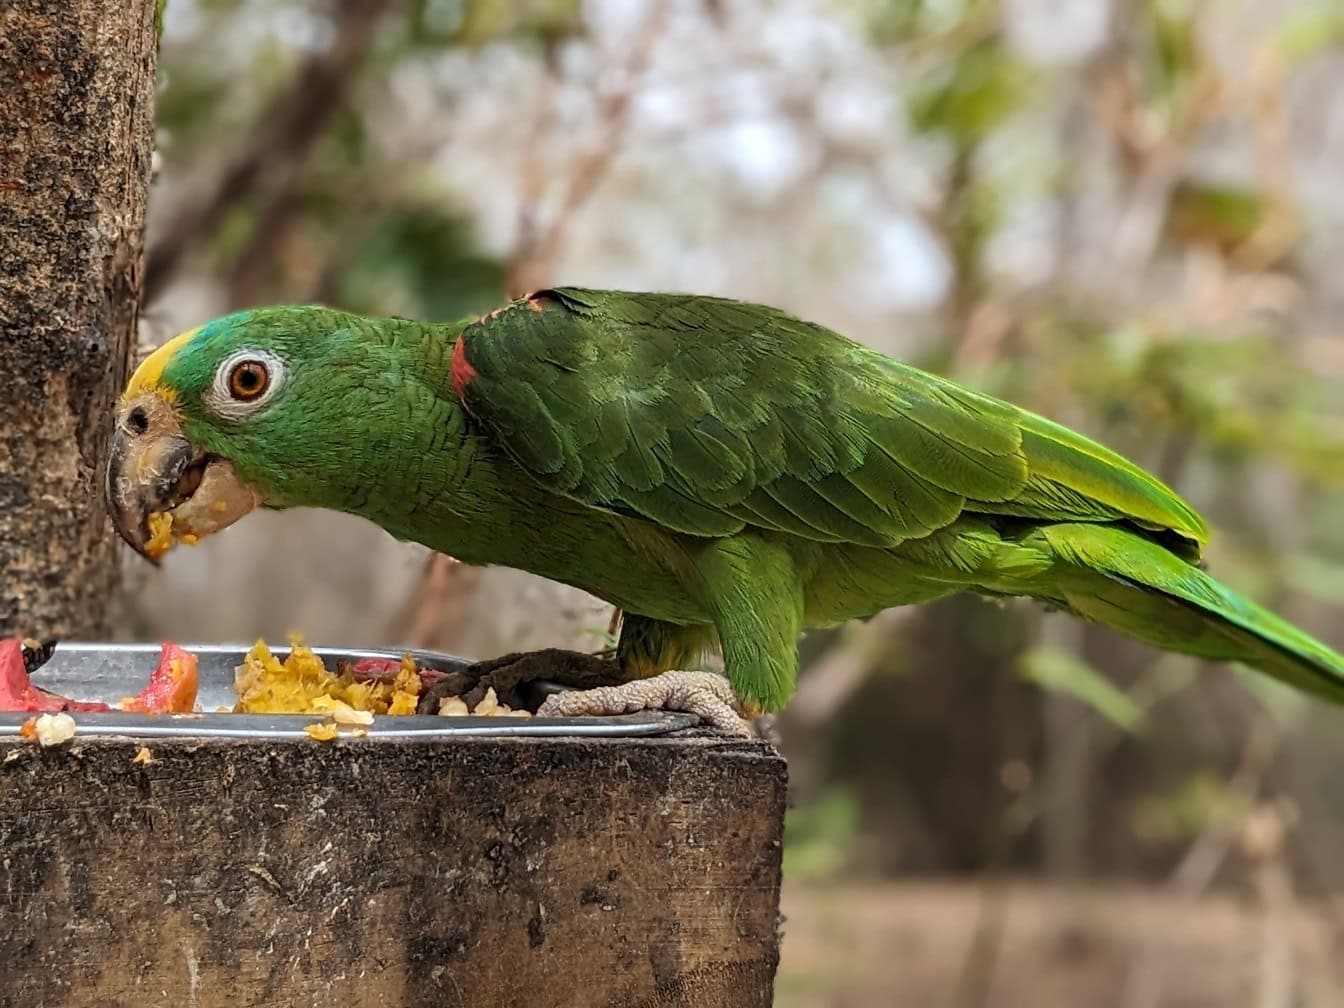 パナマのアマゾンオウムは、パナマの黄色い頭のアマゾンの鳥 (Amazona ochrocephala panamensis) 、食べ物を食べる緑色のオウムとしても知られています